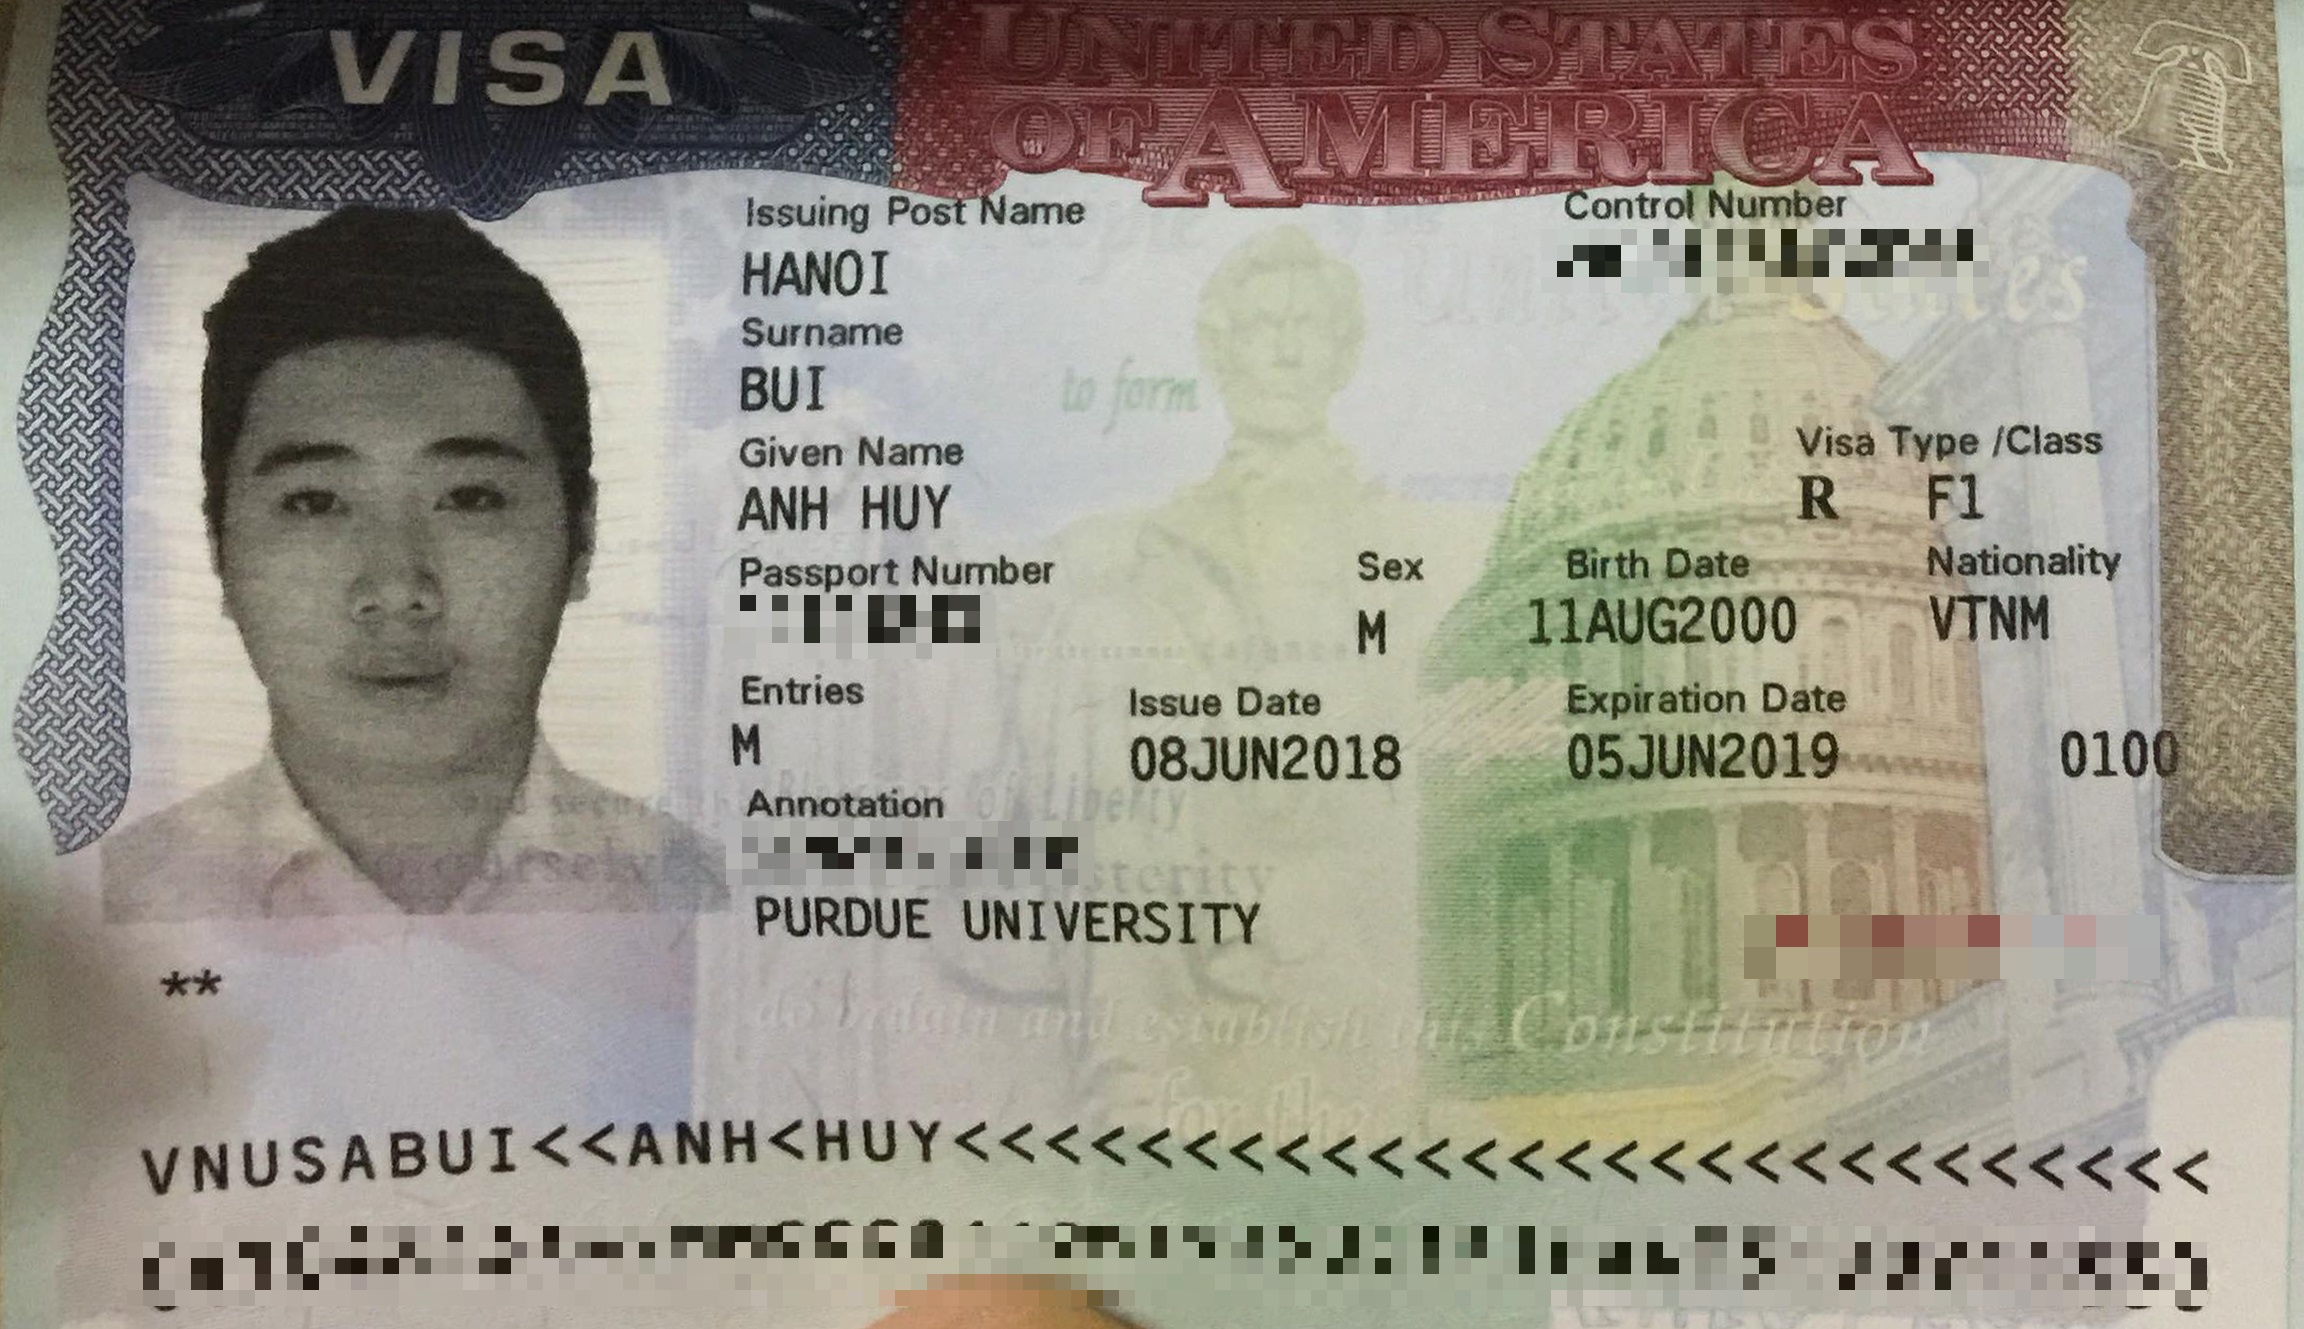 Chúc mừng bạn Bùi Anh Huy đã đậu visa du học Mỹ